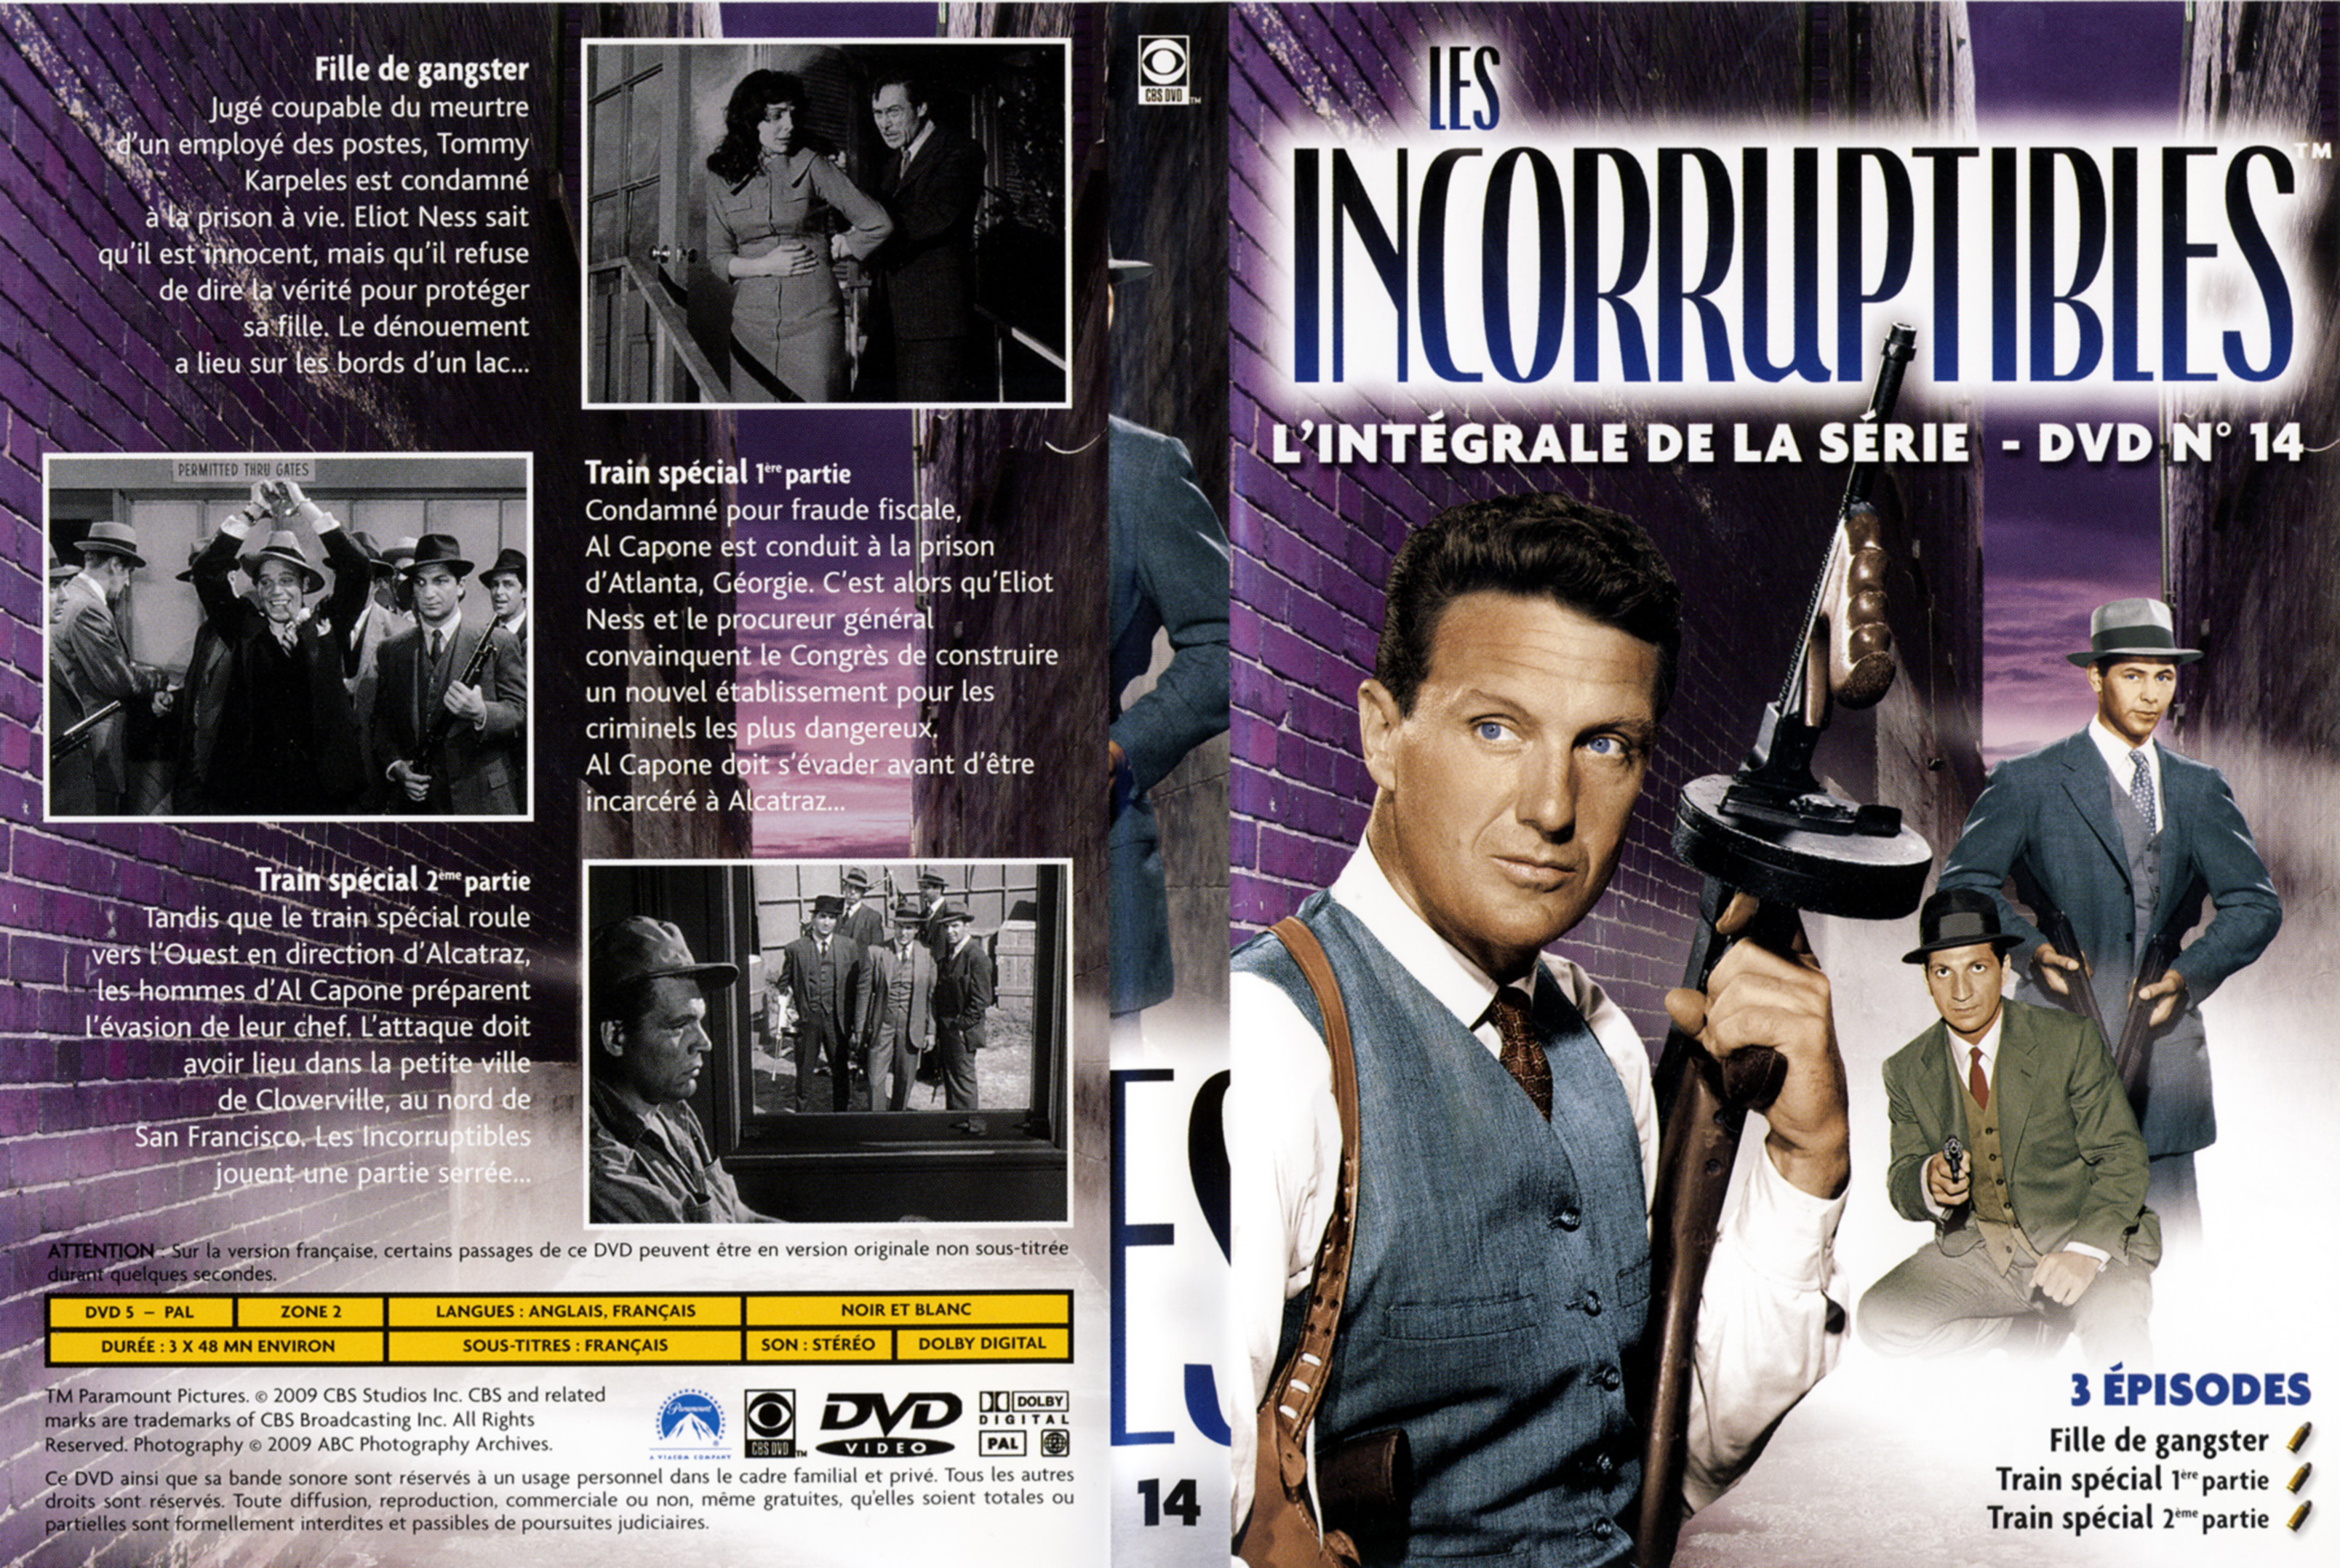 Jaquette DVD Les incorruptibles intgrale DVD 14